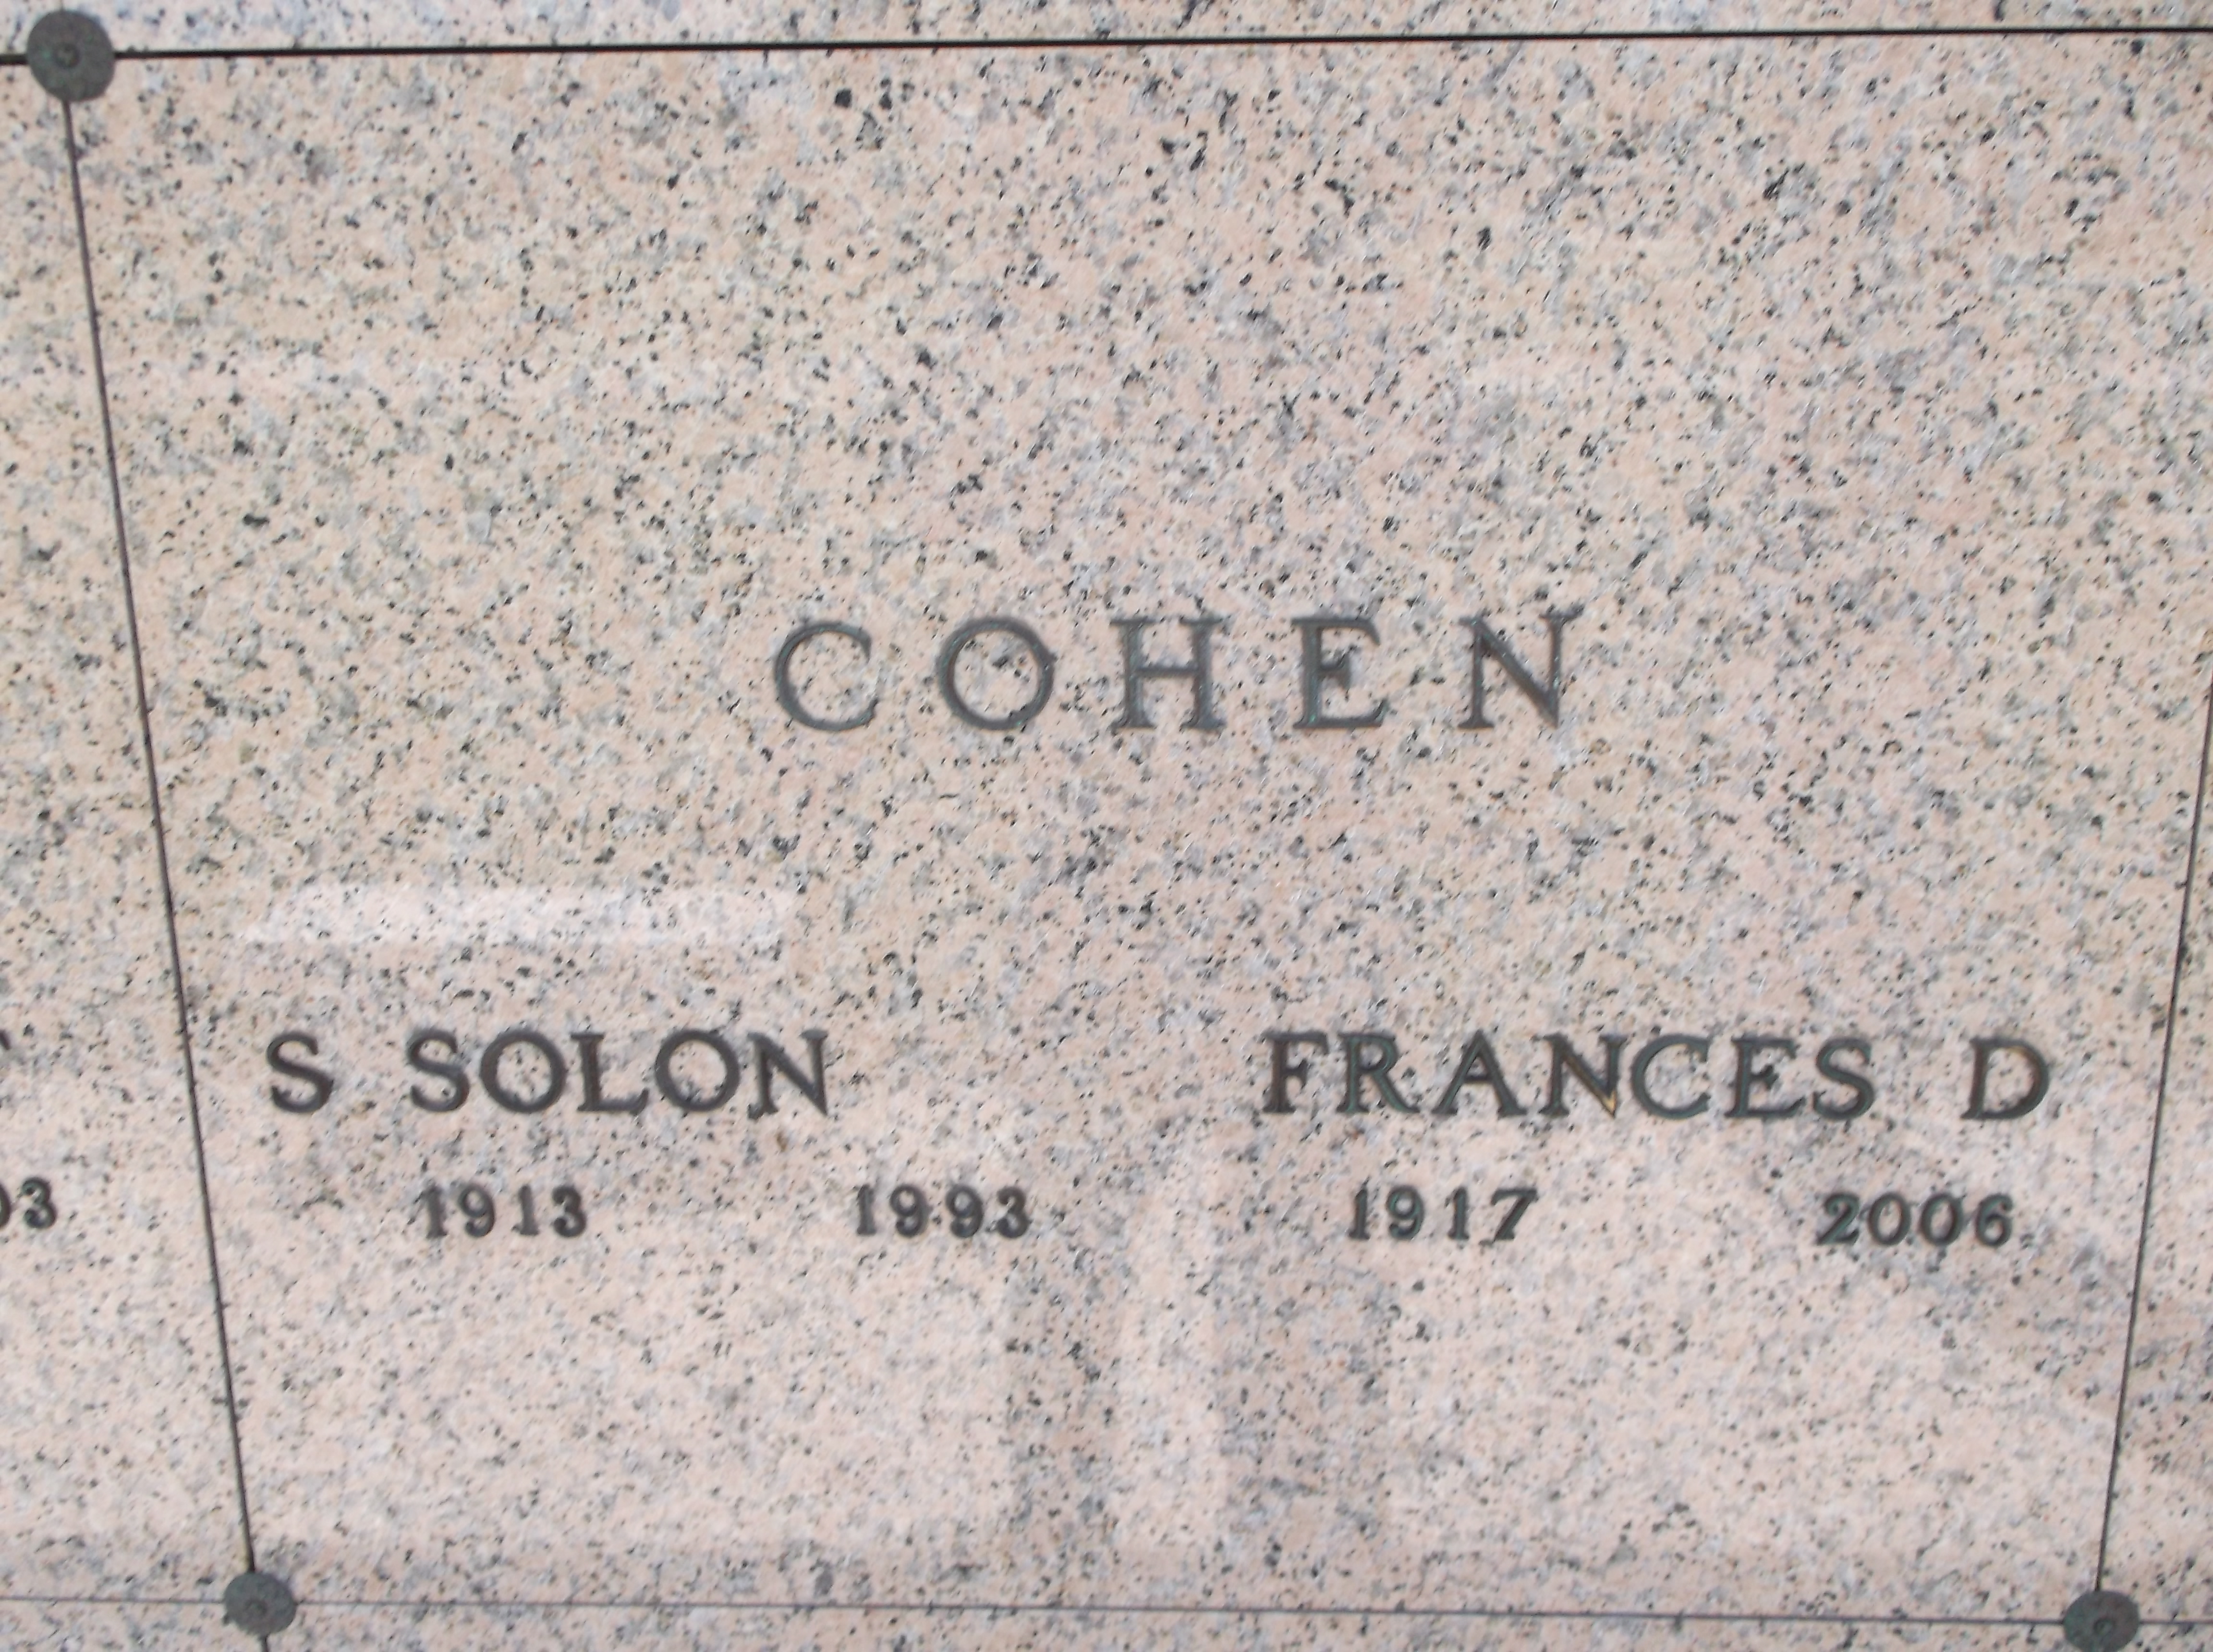 S Solon Cohen